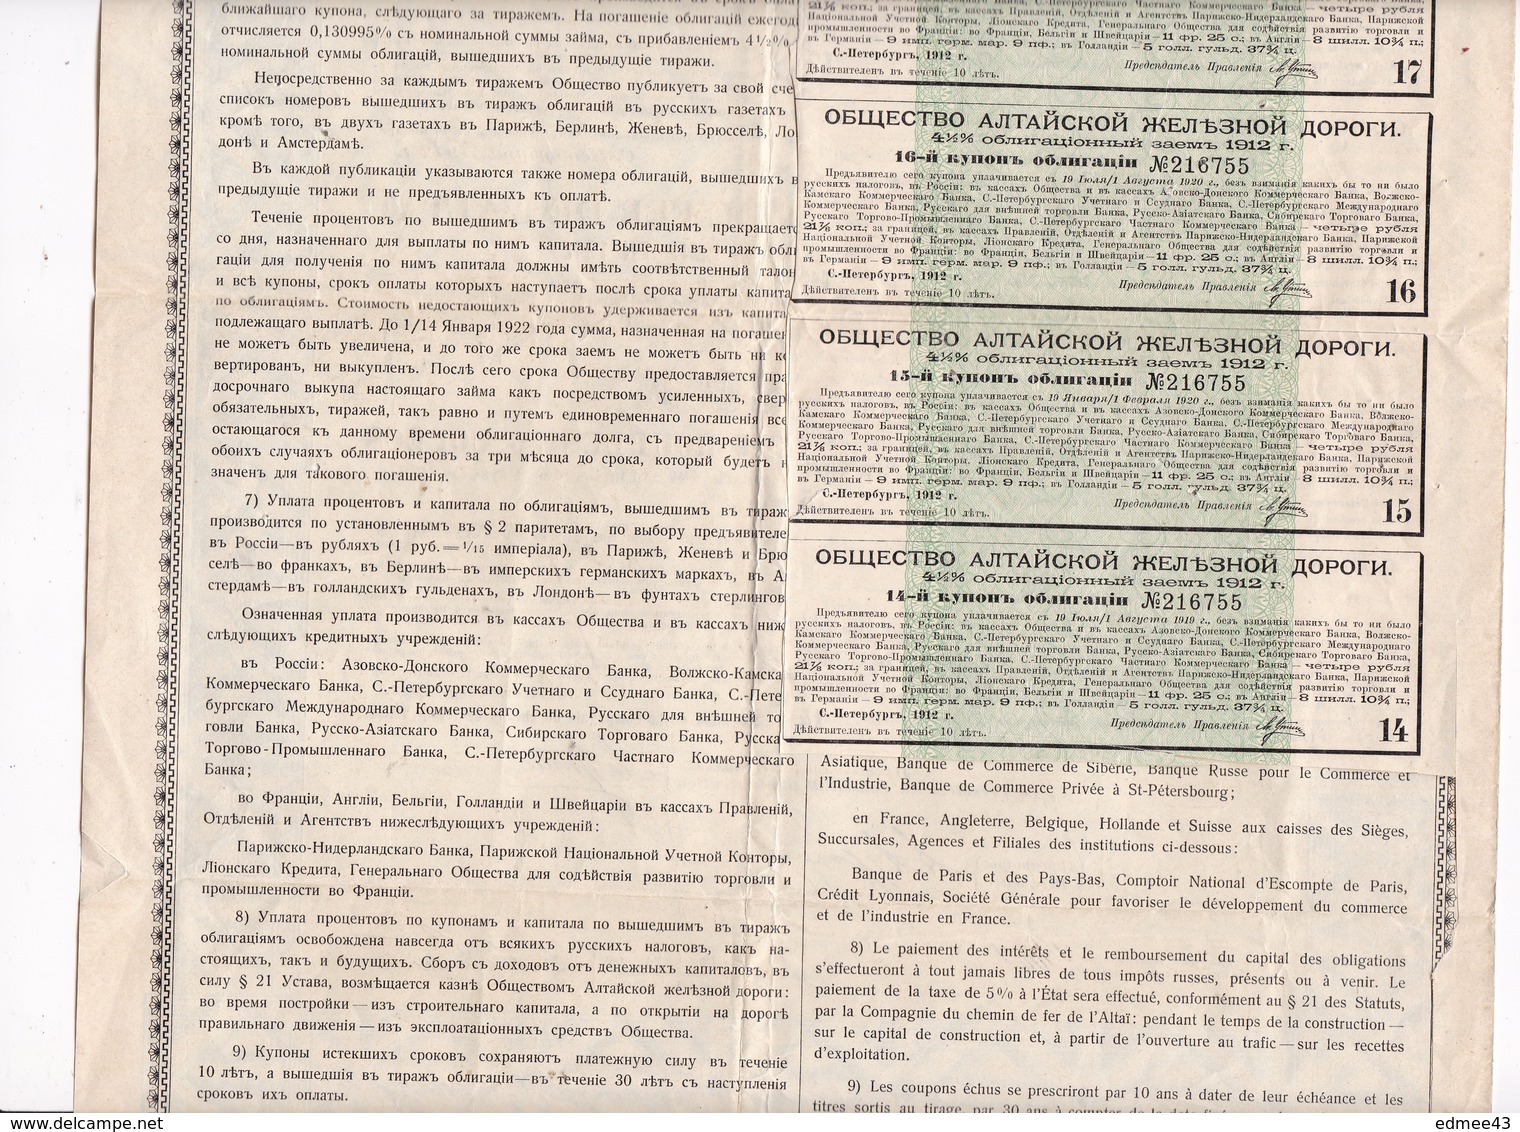 Compagnie Du Chemin De Fer De L'Altaï, Obligation Au Porteur Emprunt 4,5 %, 187,50 Roubles, Saint-Pétersbourg, 1912 - A - C